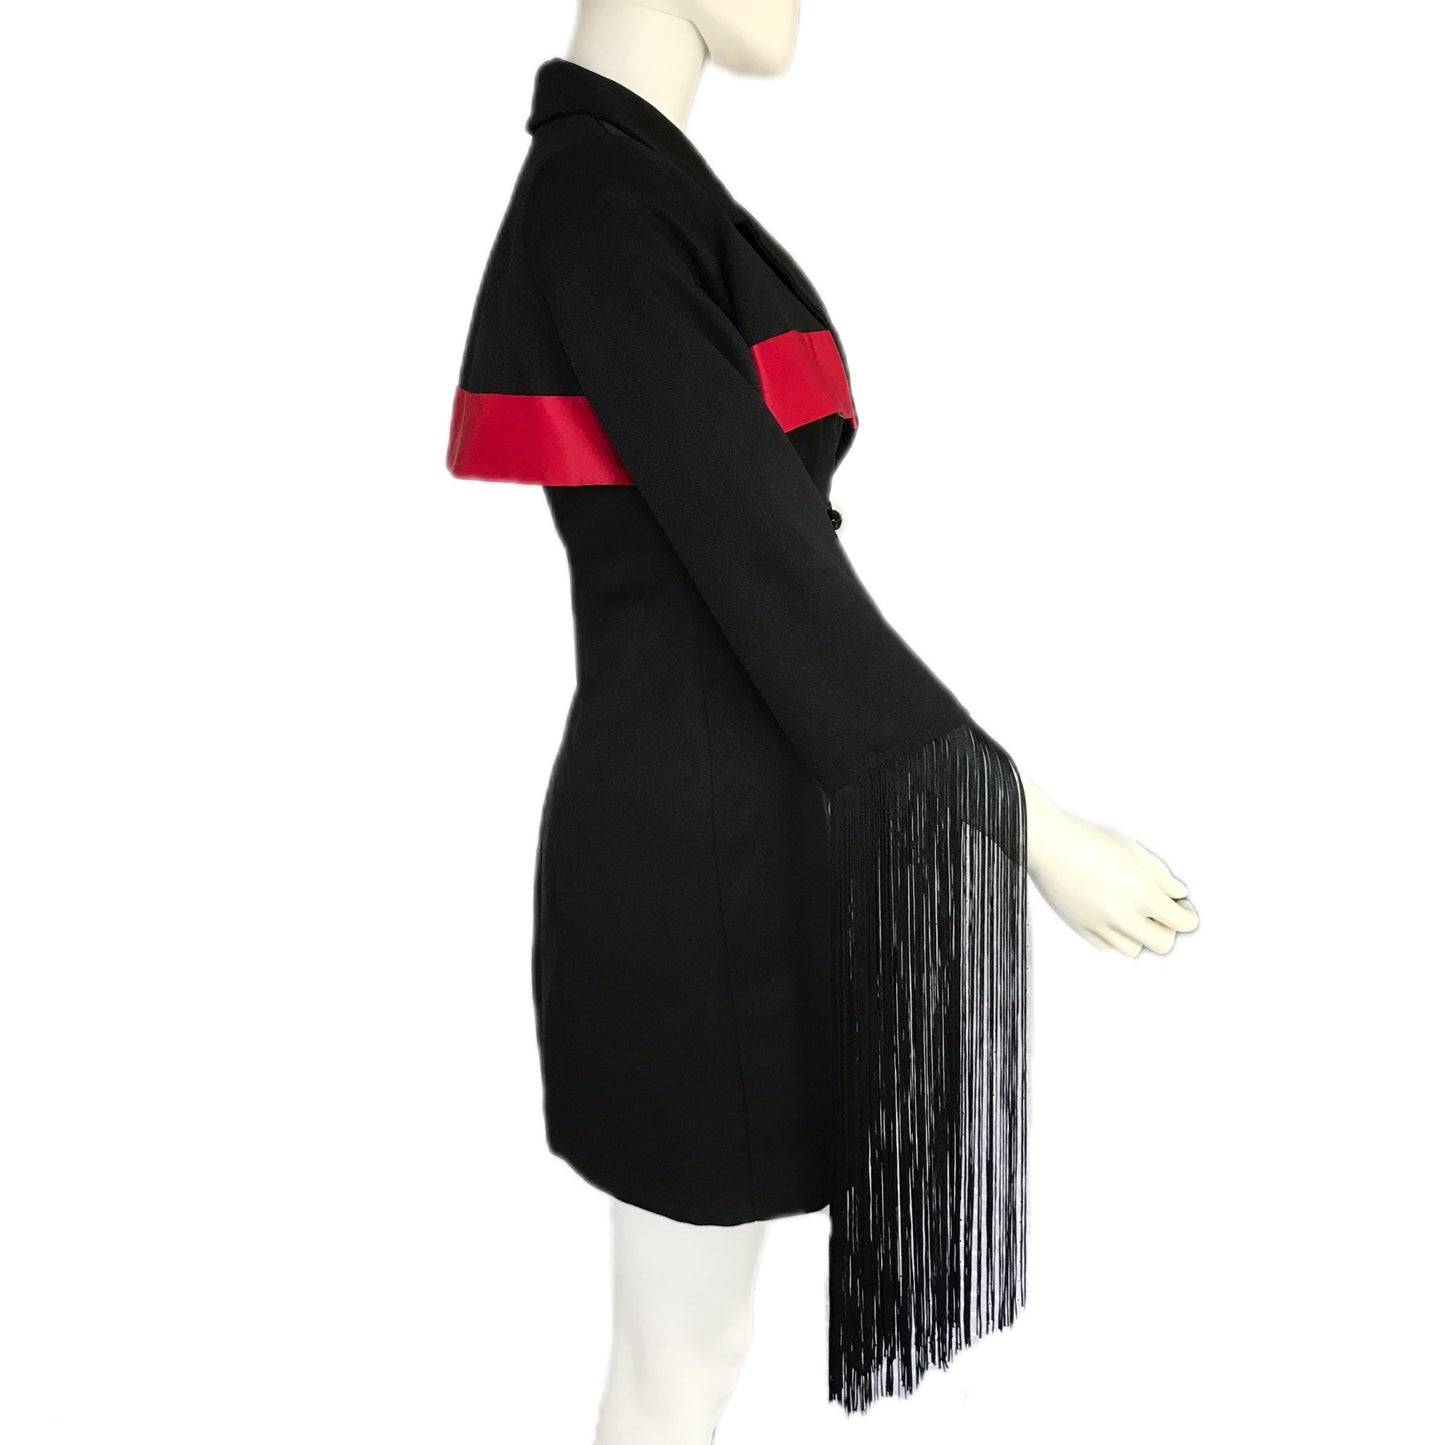 Women's Trench Blazer Dress with Fringe - Size 6